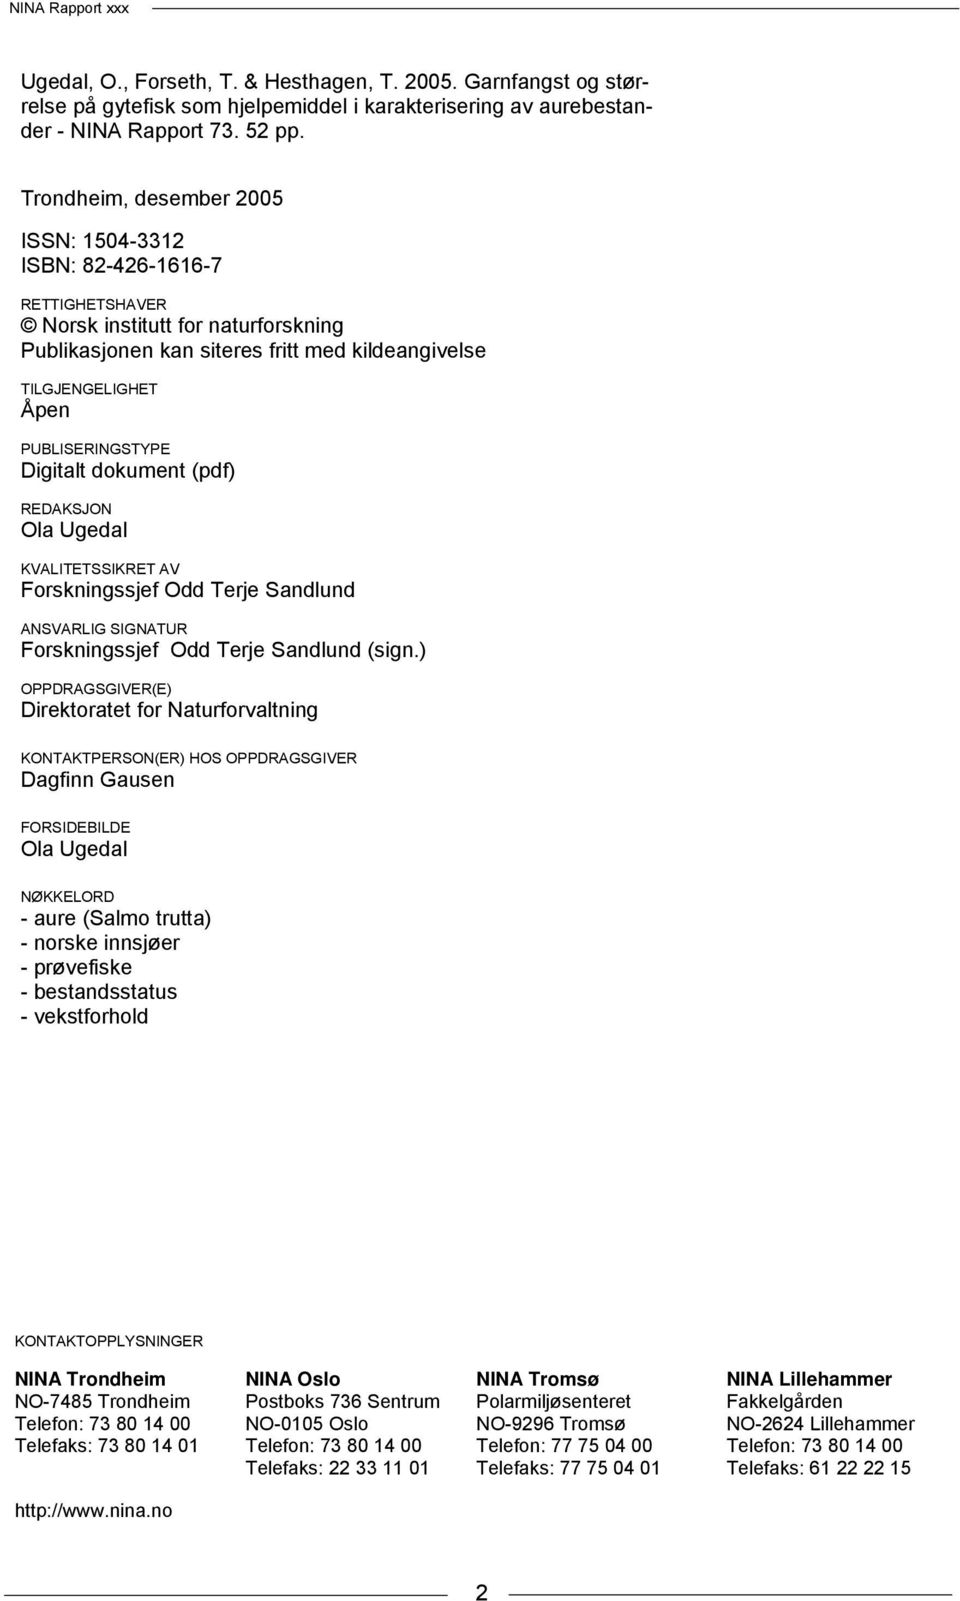 PUBLISERINGSTYPE Digitalt dokument (pdf) REDAKSJON Ola Ugedal KVALITETSSIKRET AV Forskningssjef Odd Terje Sandlund ANSVARLIG SIGNATUR Forskningssjef Odd Terje Sandlund (sign.